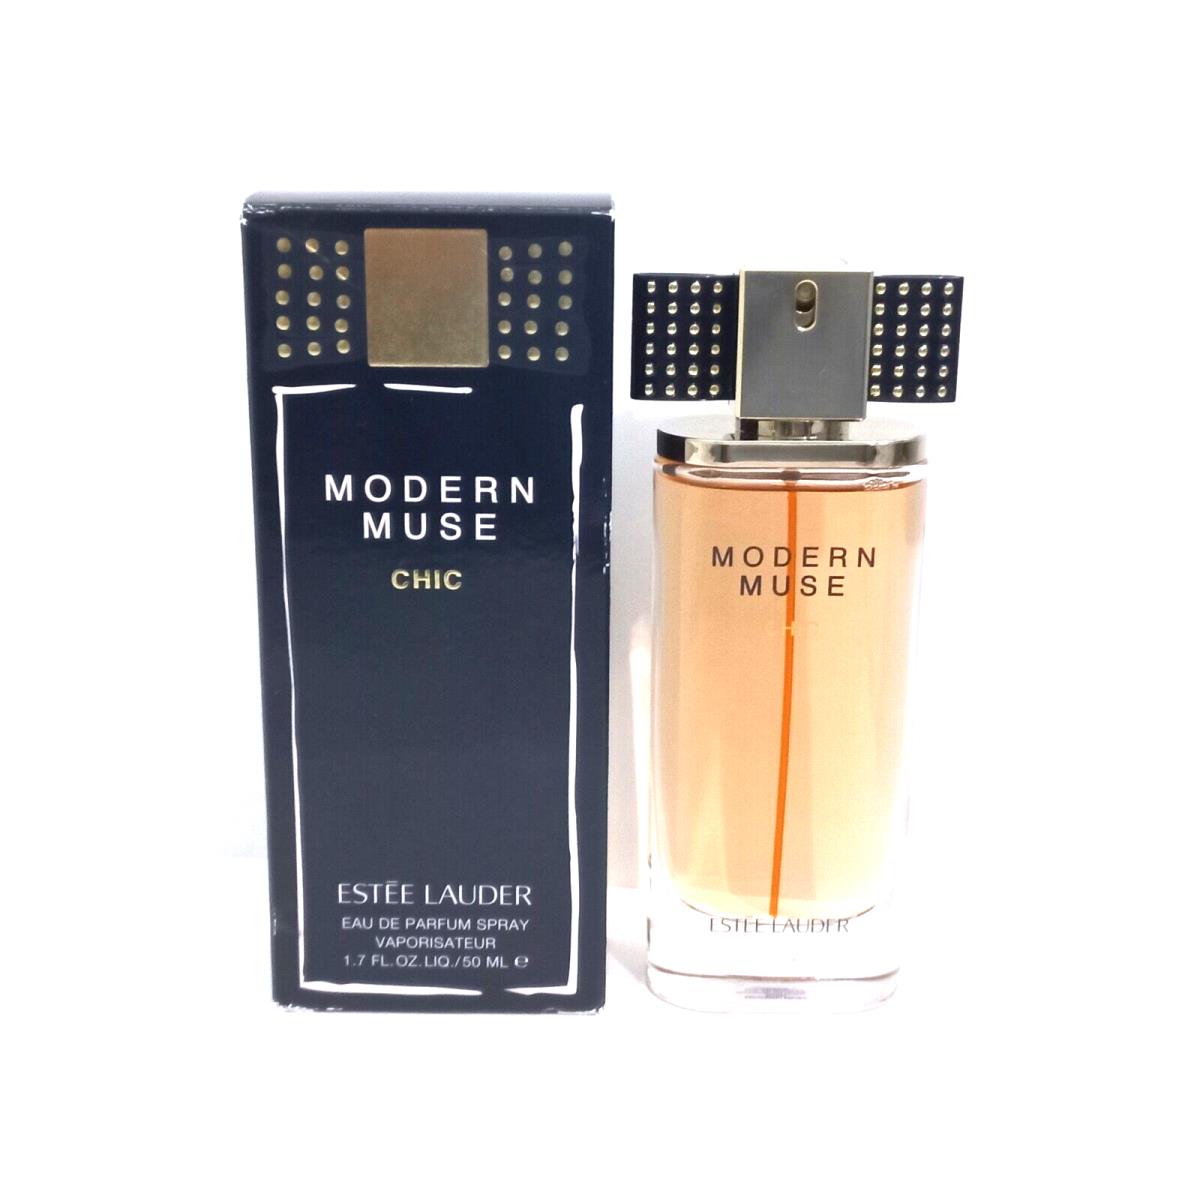 Modern Muse Chic By Estee Lauder Eau de Parfum Spray For Women 1. 7 fl oz